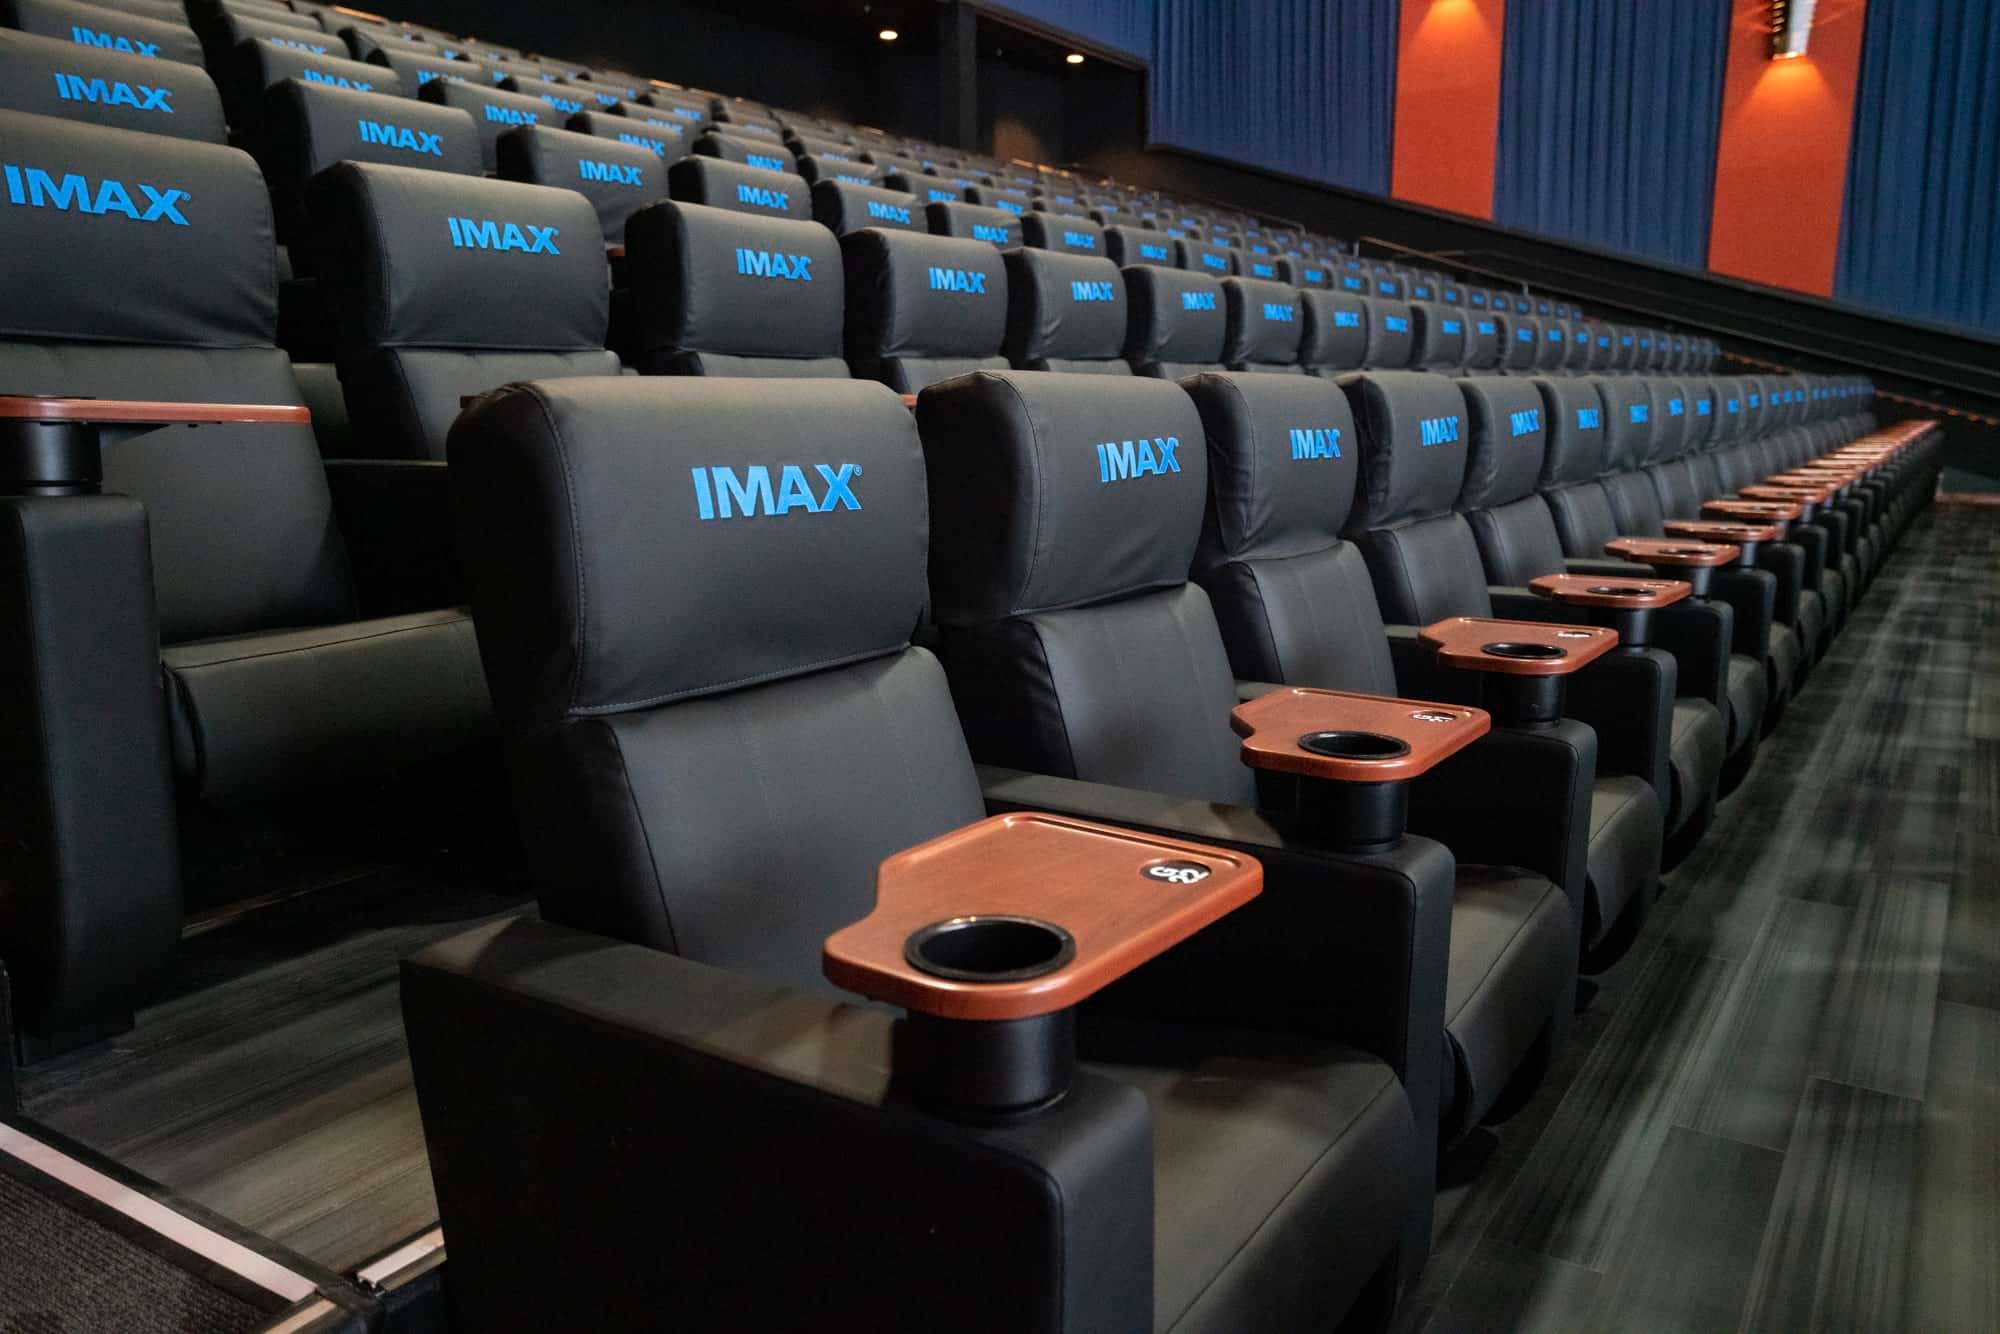 Santikos Theater IMAX seats